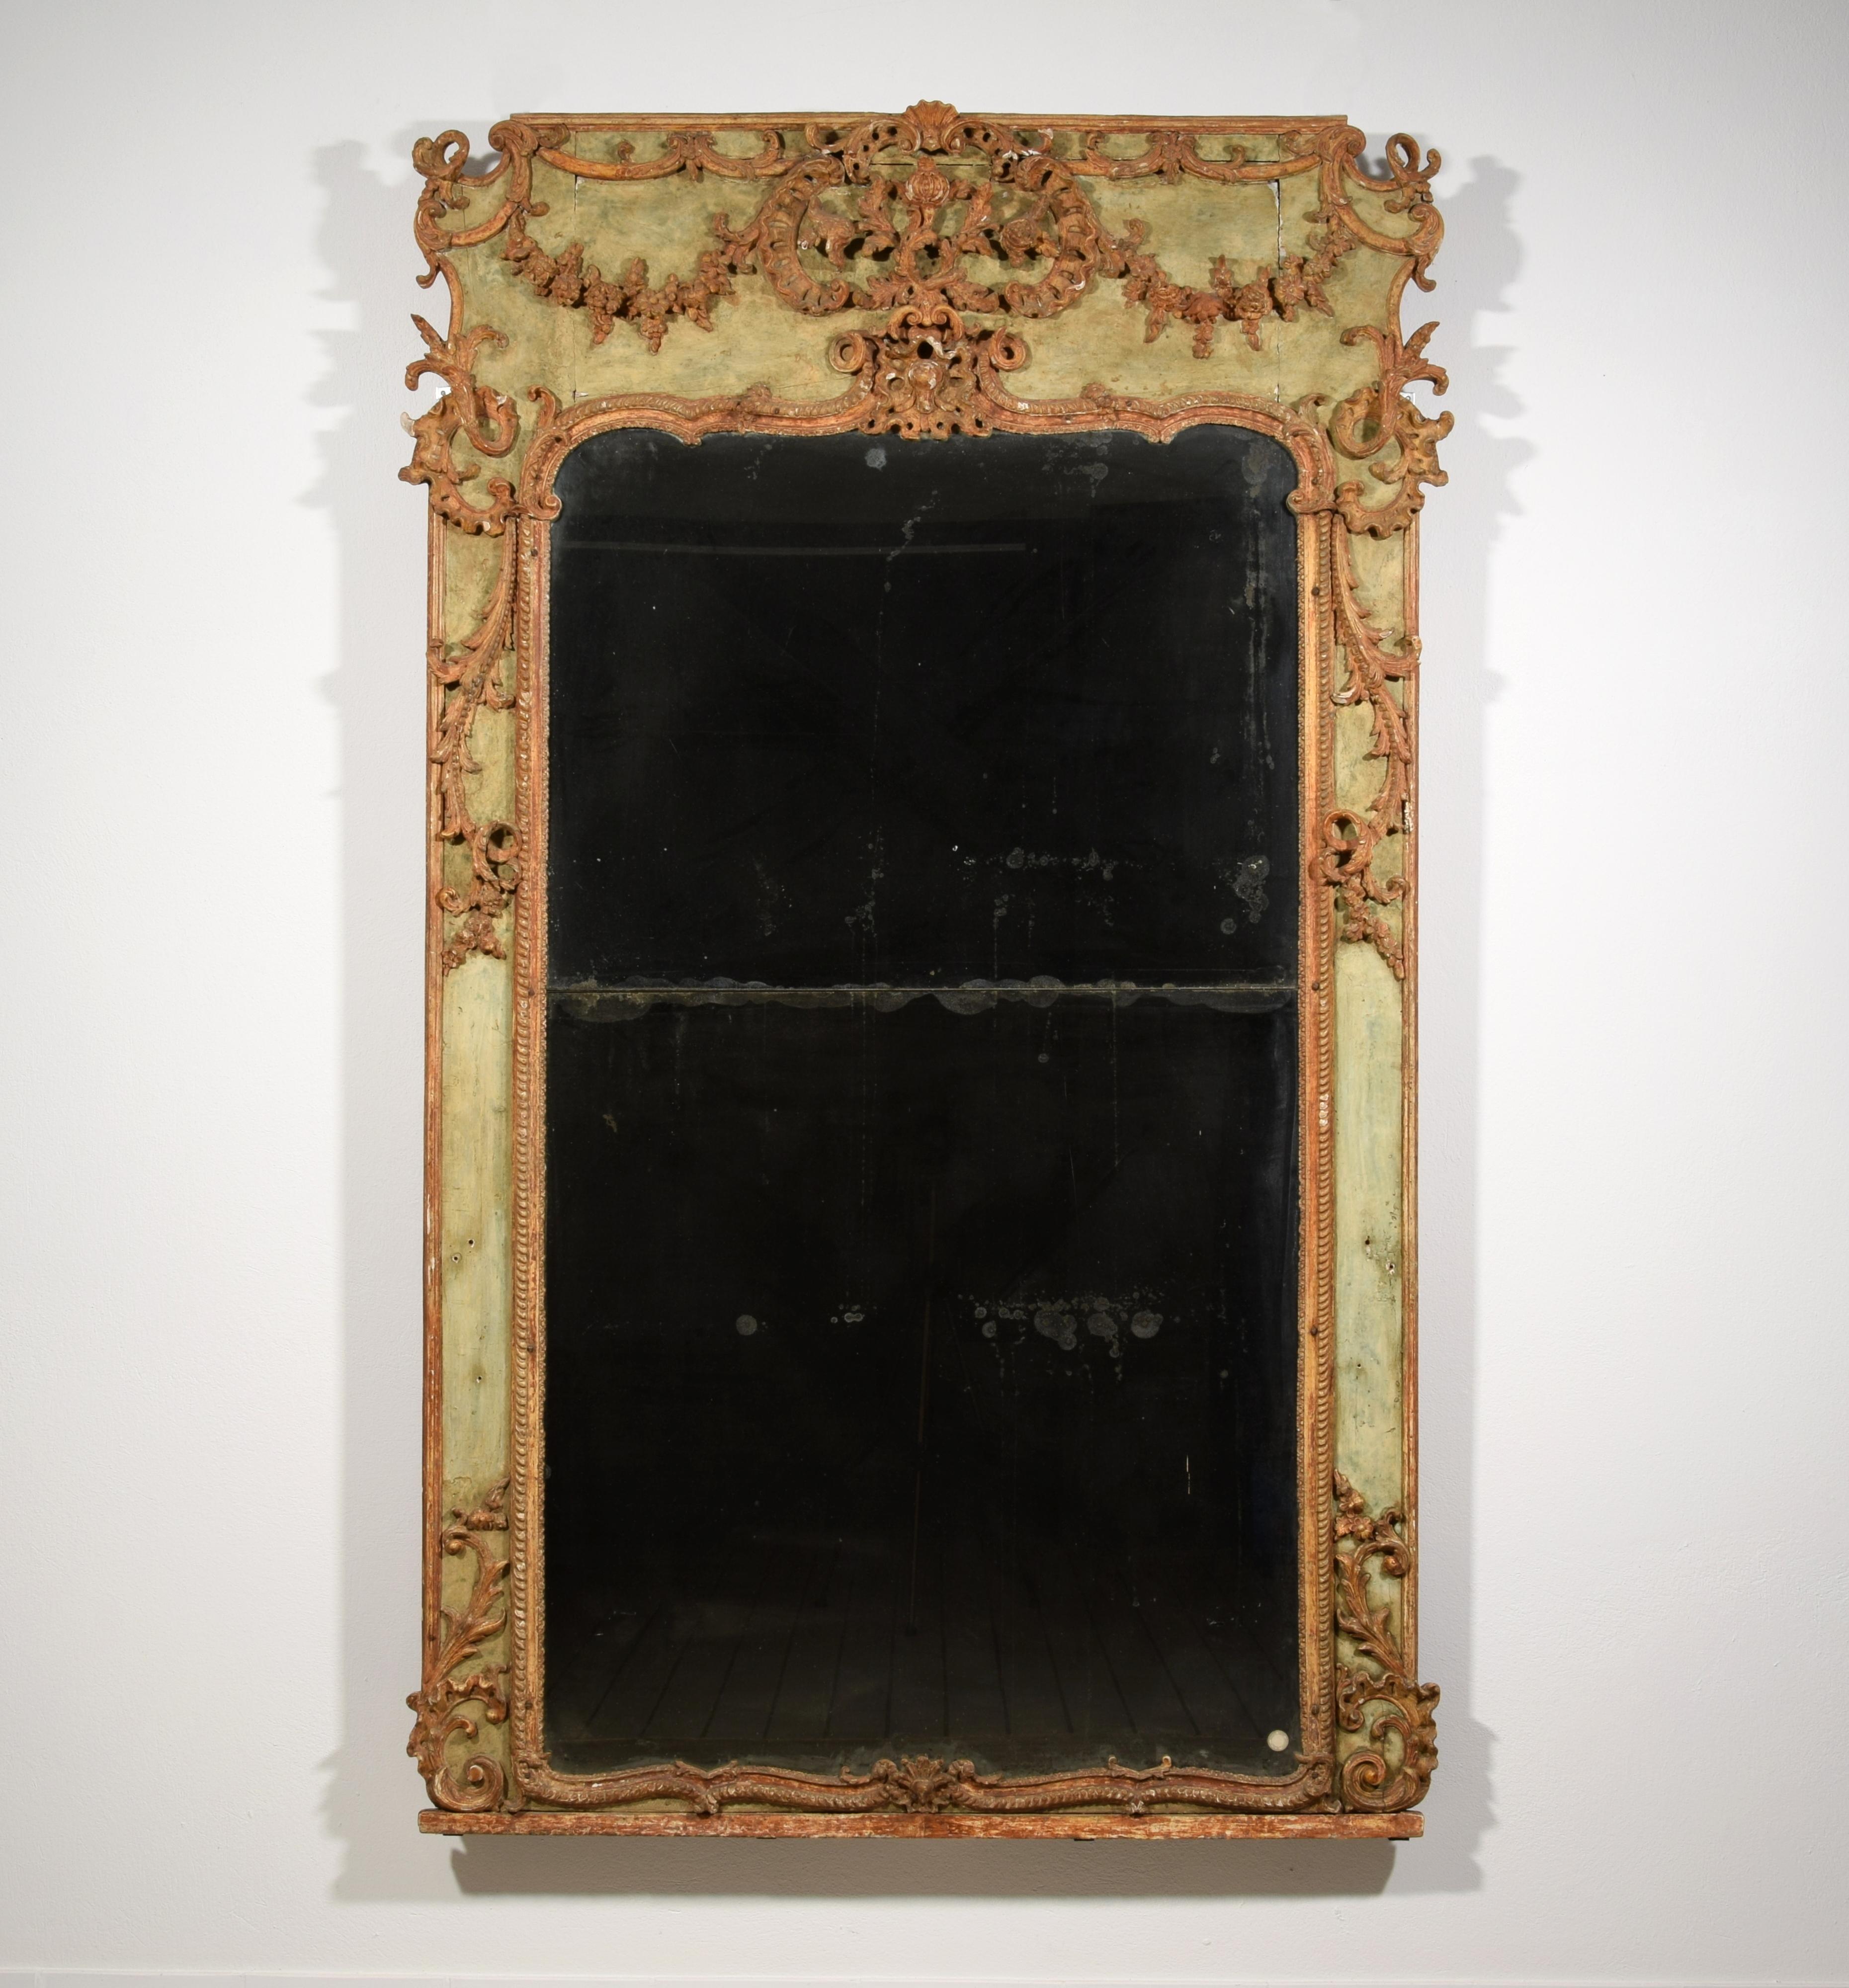 XVIIIe siècle, Grand miroir baroque italien en bois et plâtre laqué

Ce grand miroir raffiné a été fabriqué dans le Piémont, en Italie, vers le milieu du XVIIIe siècle.
De forme quadrangulaire, le cadre est en bois avec des pastilles de plâtre